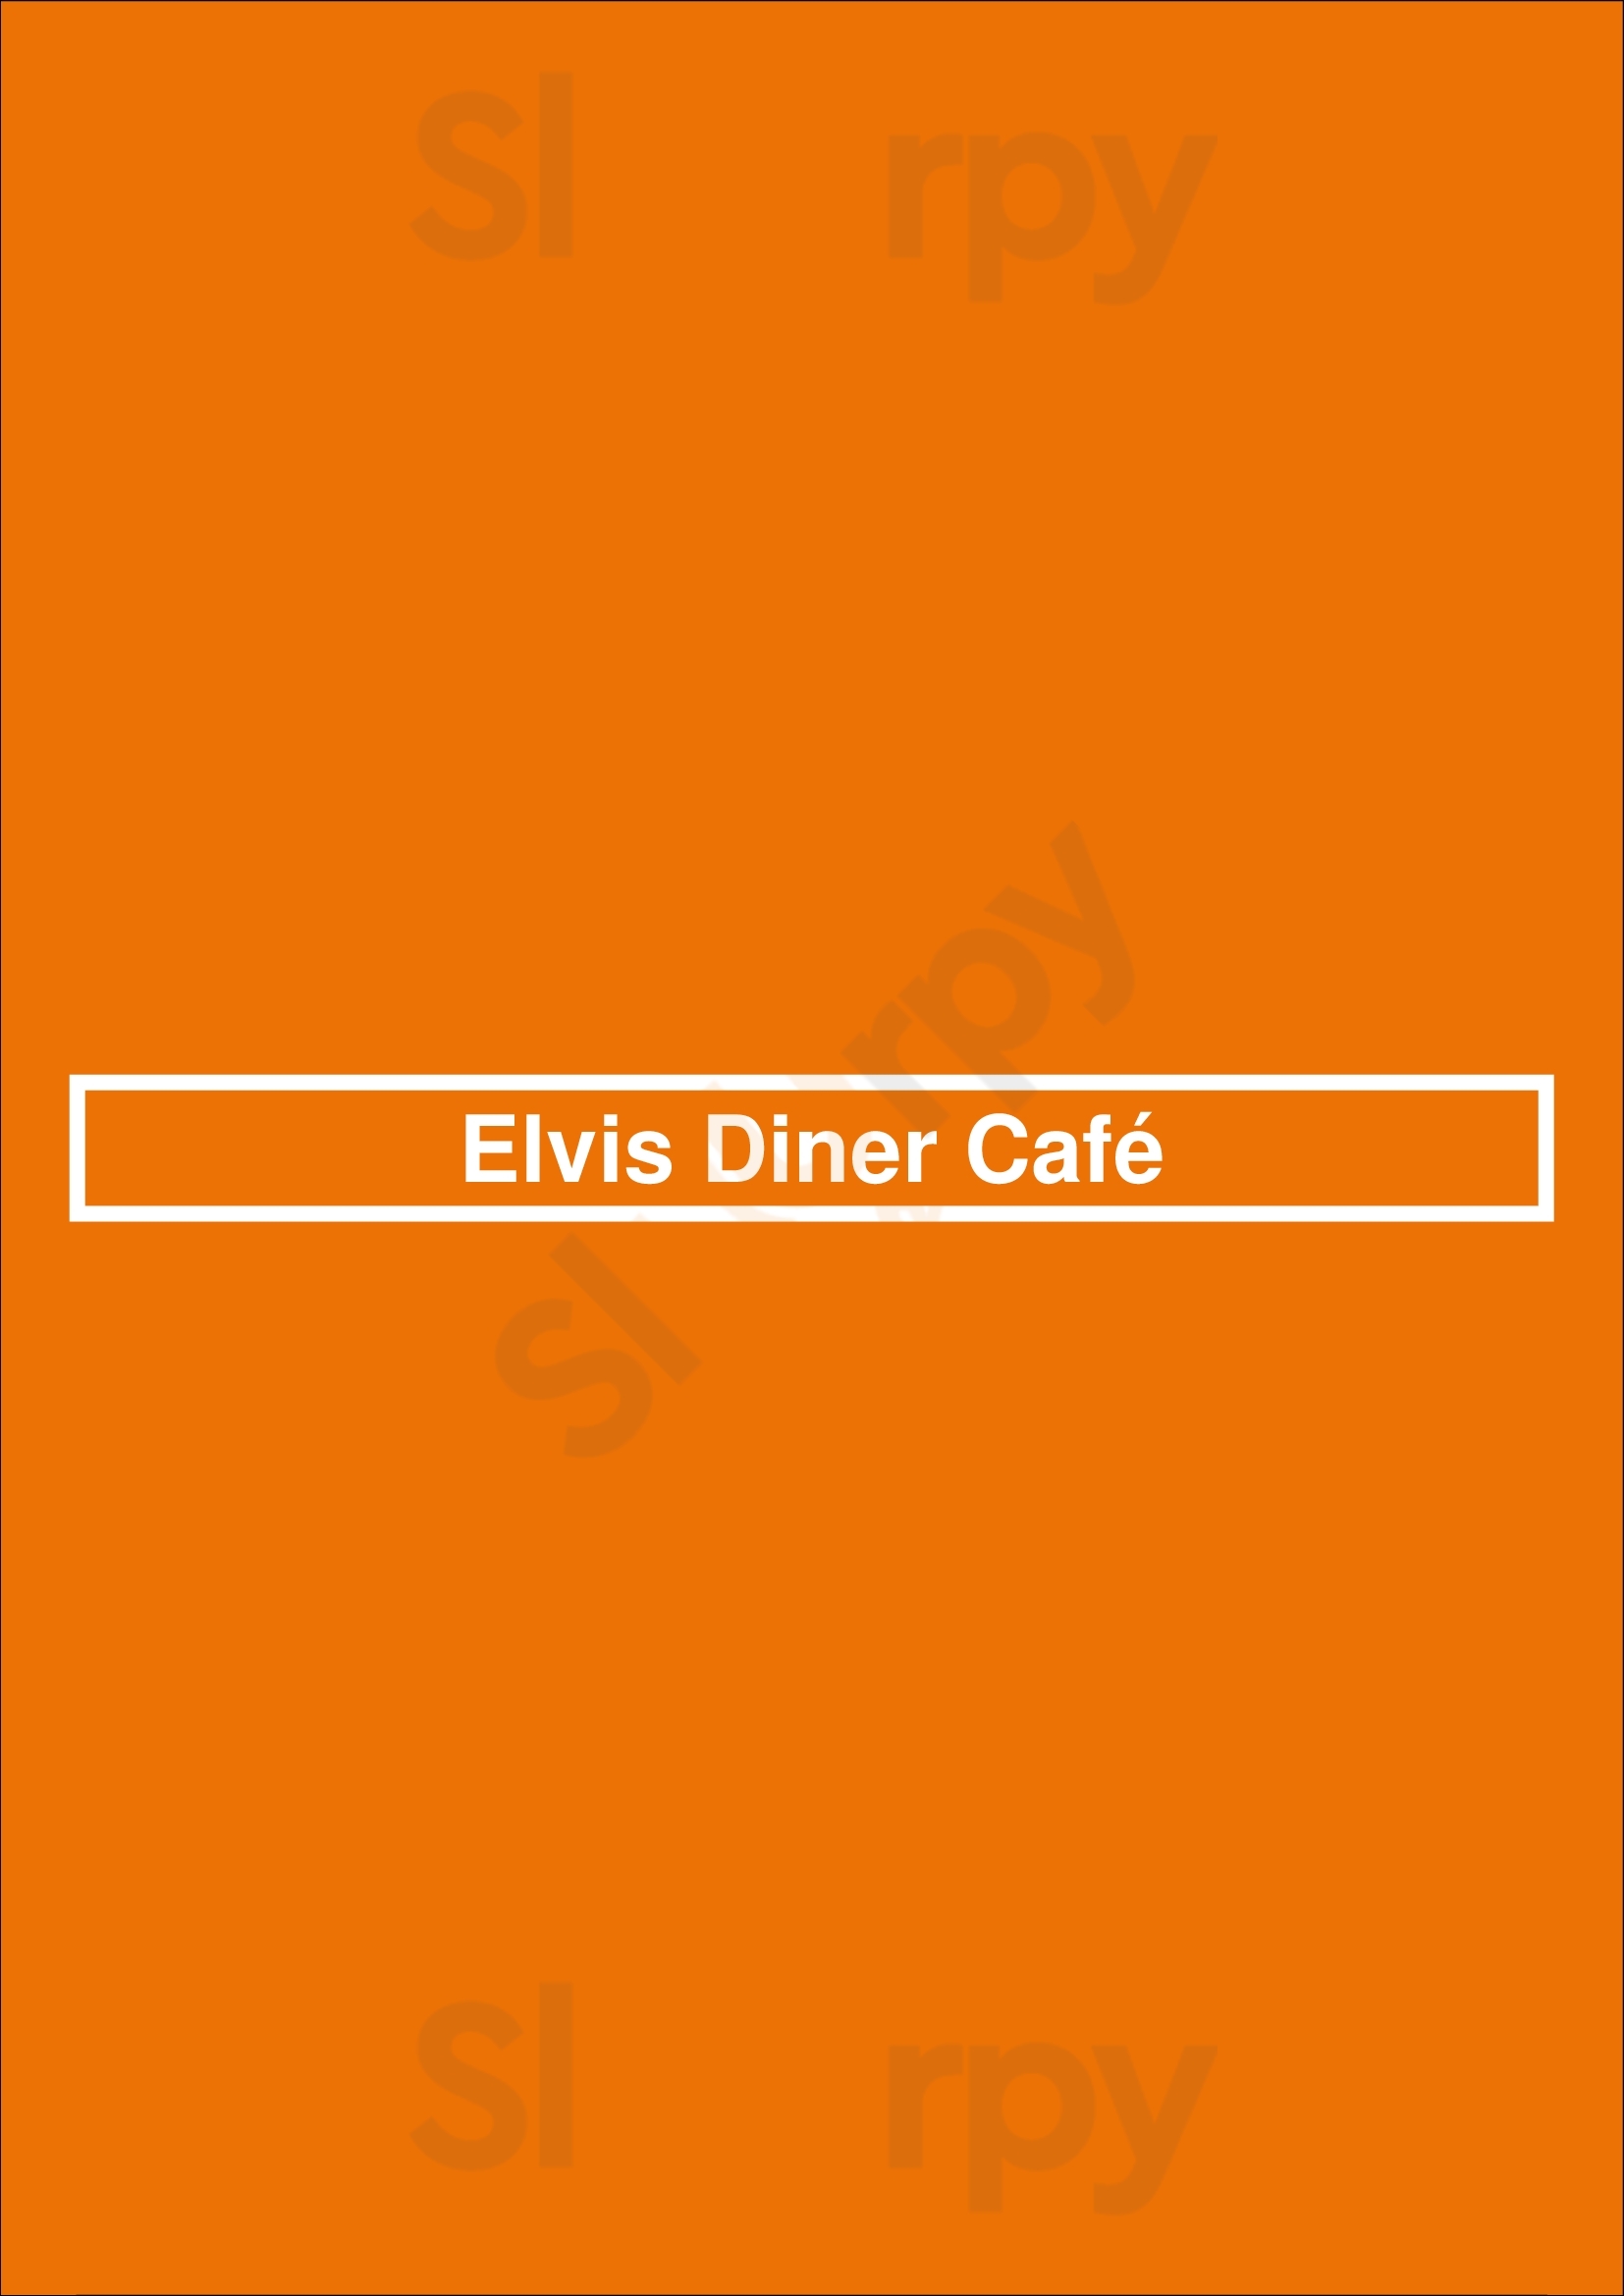 Elvis Diner Café Lauwersoog Menu - 1